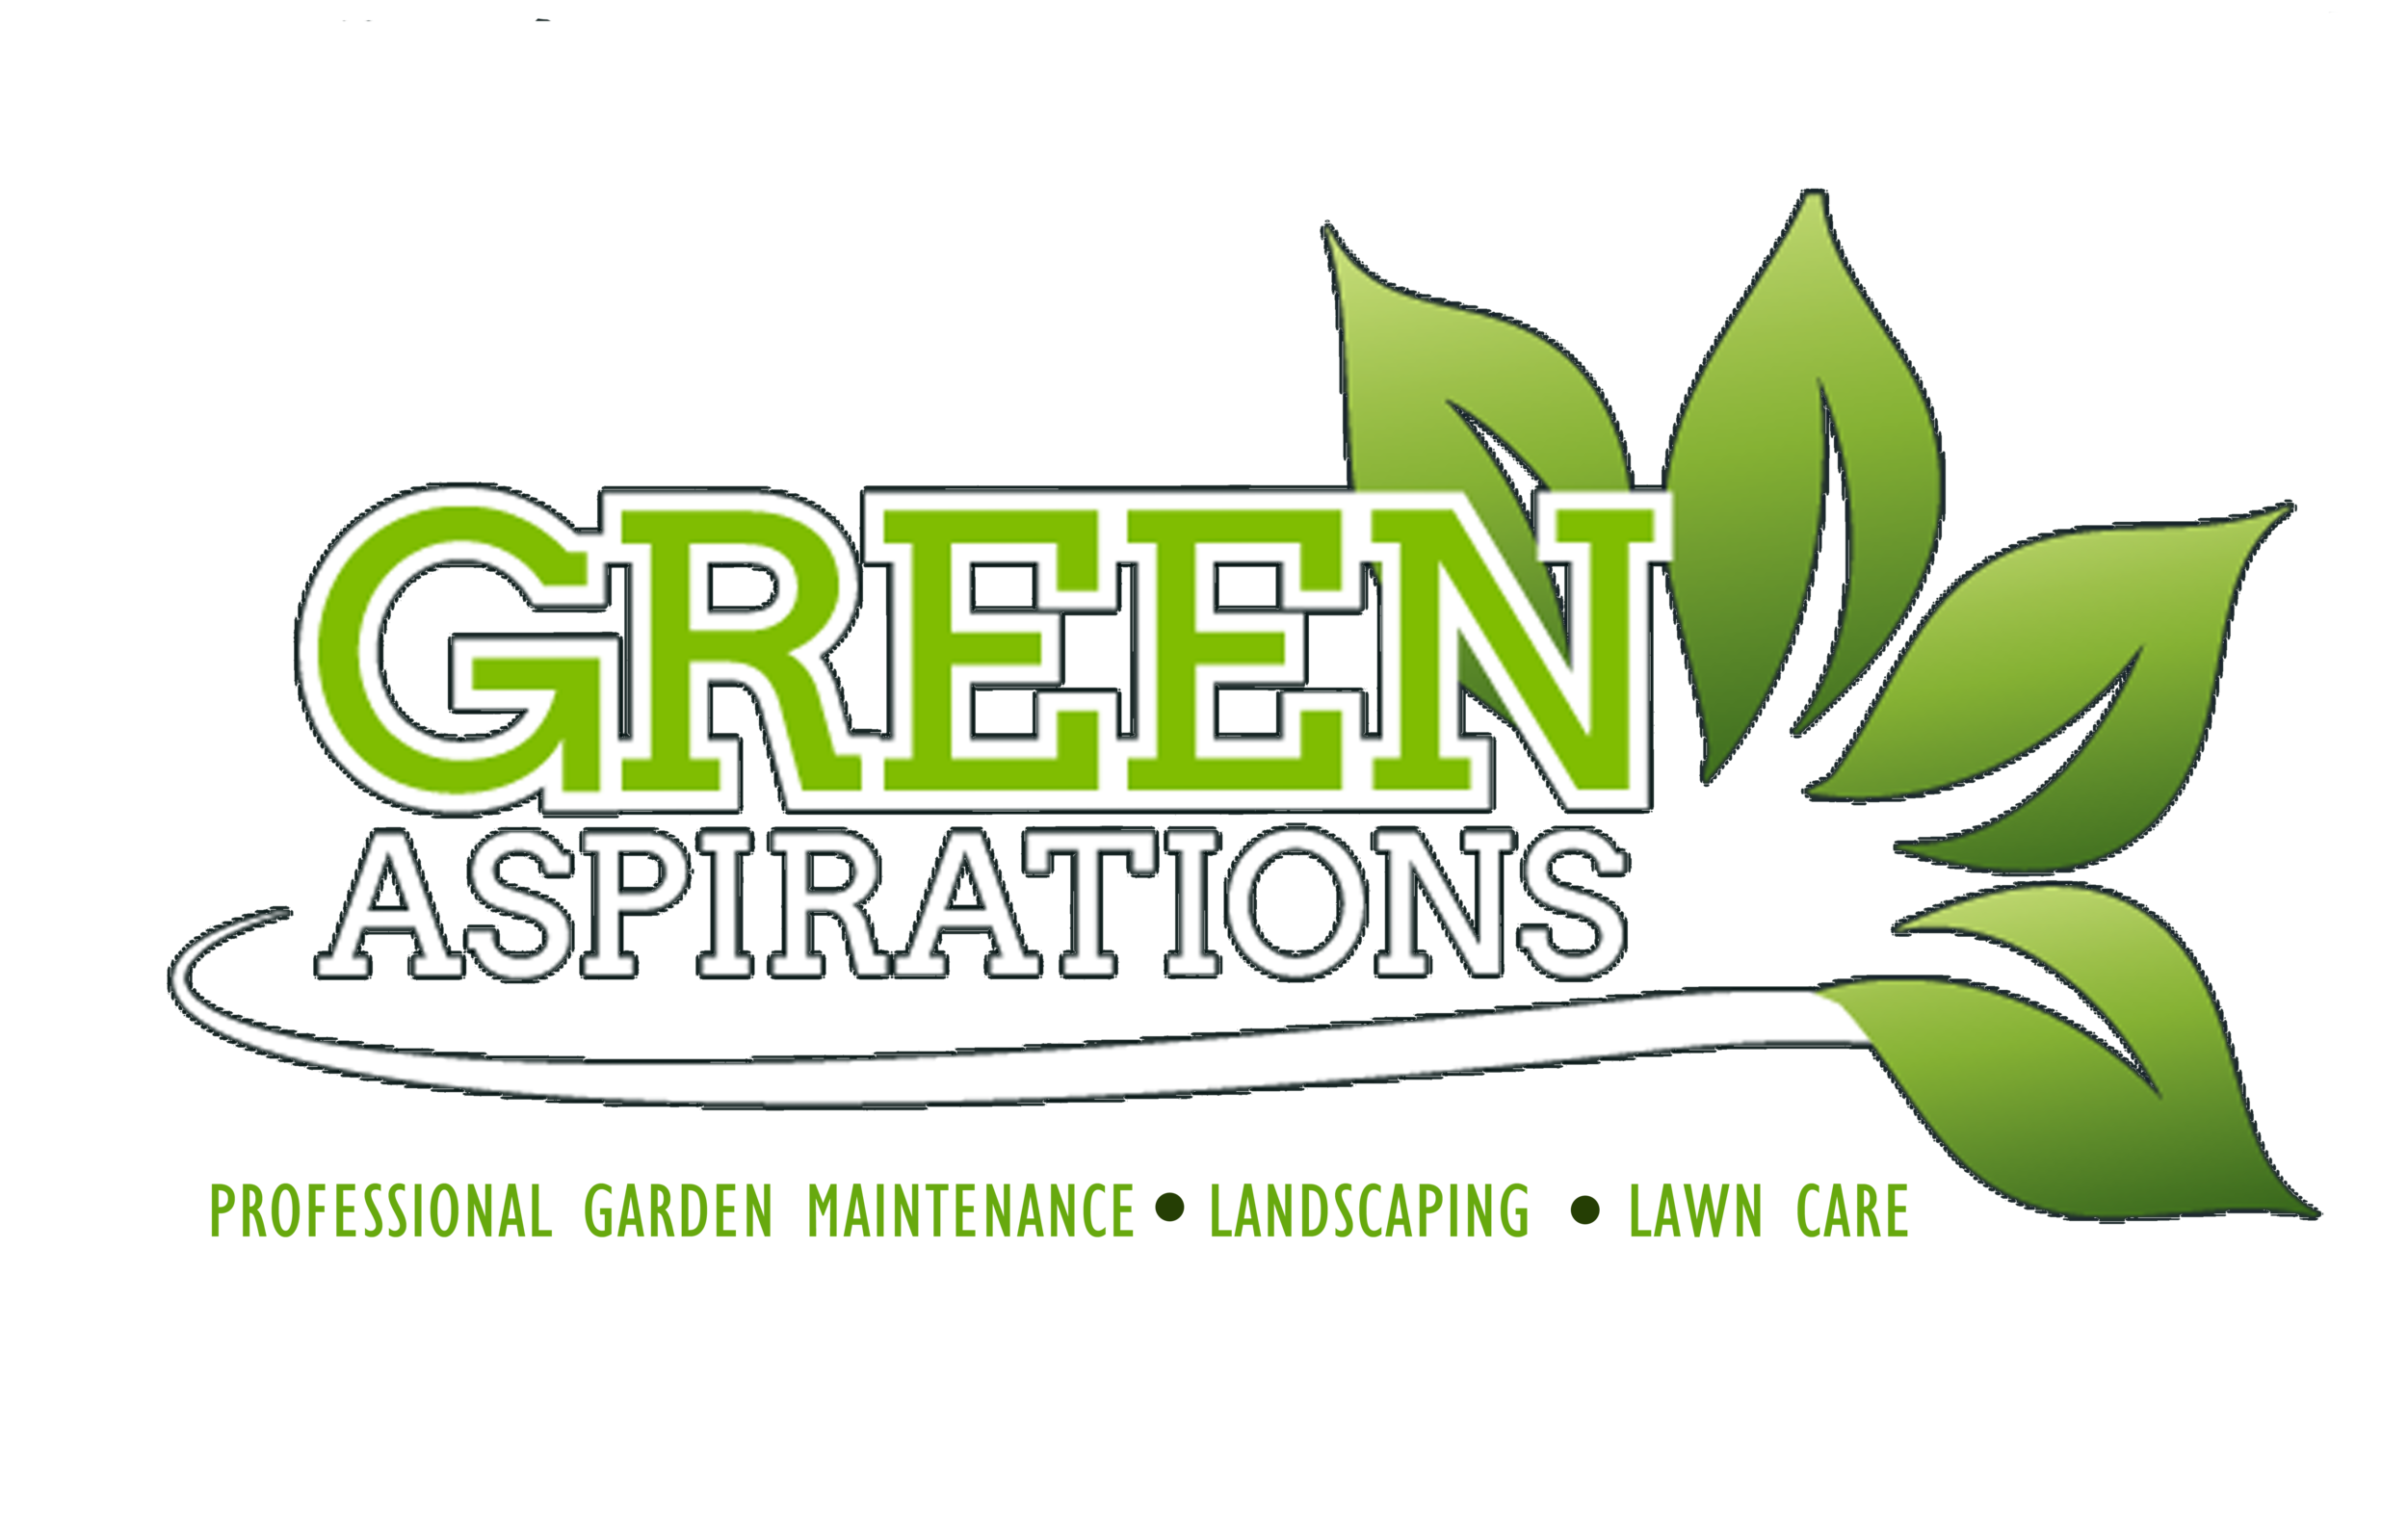 Green Aspirations: Professional Garden Maintenance Service